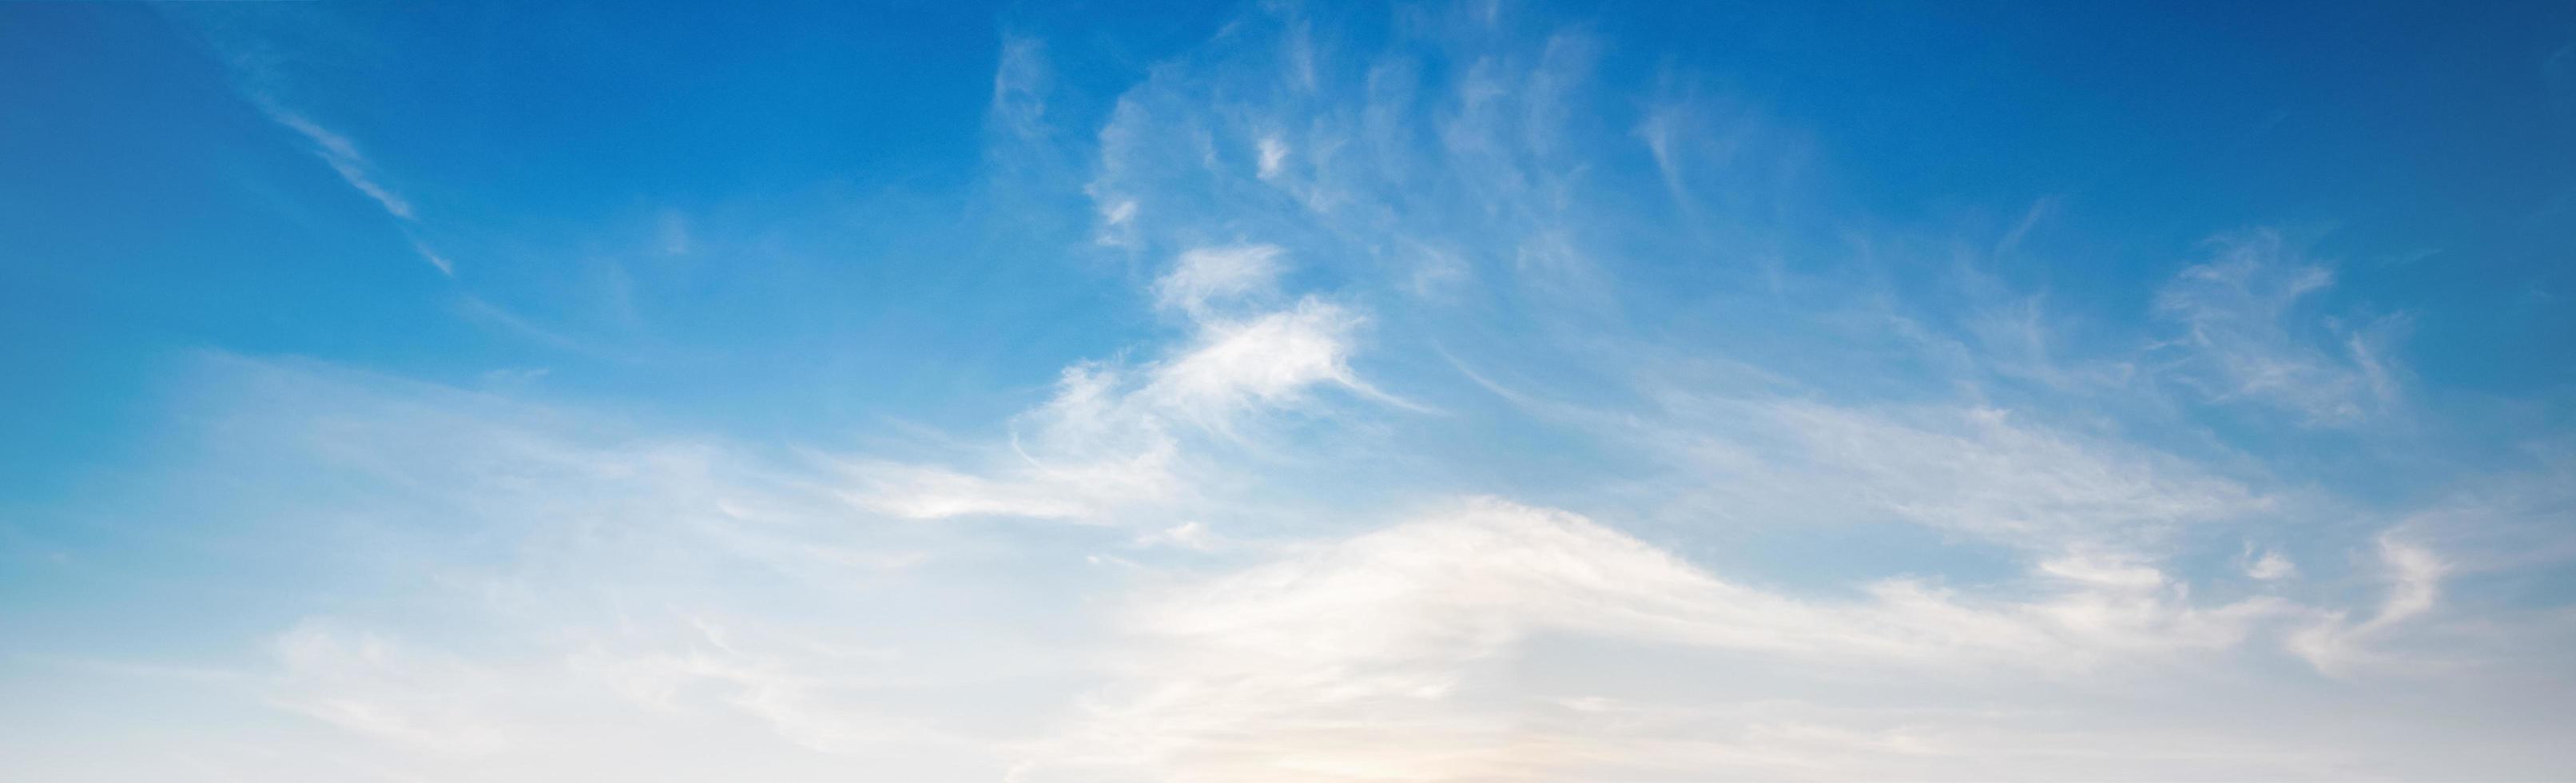 Panorama Blau Himmel mit Weiß Wolke foto